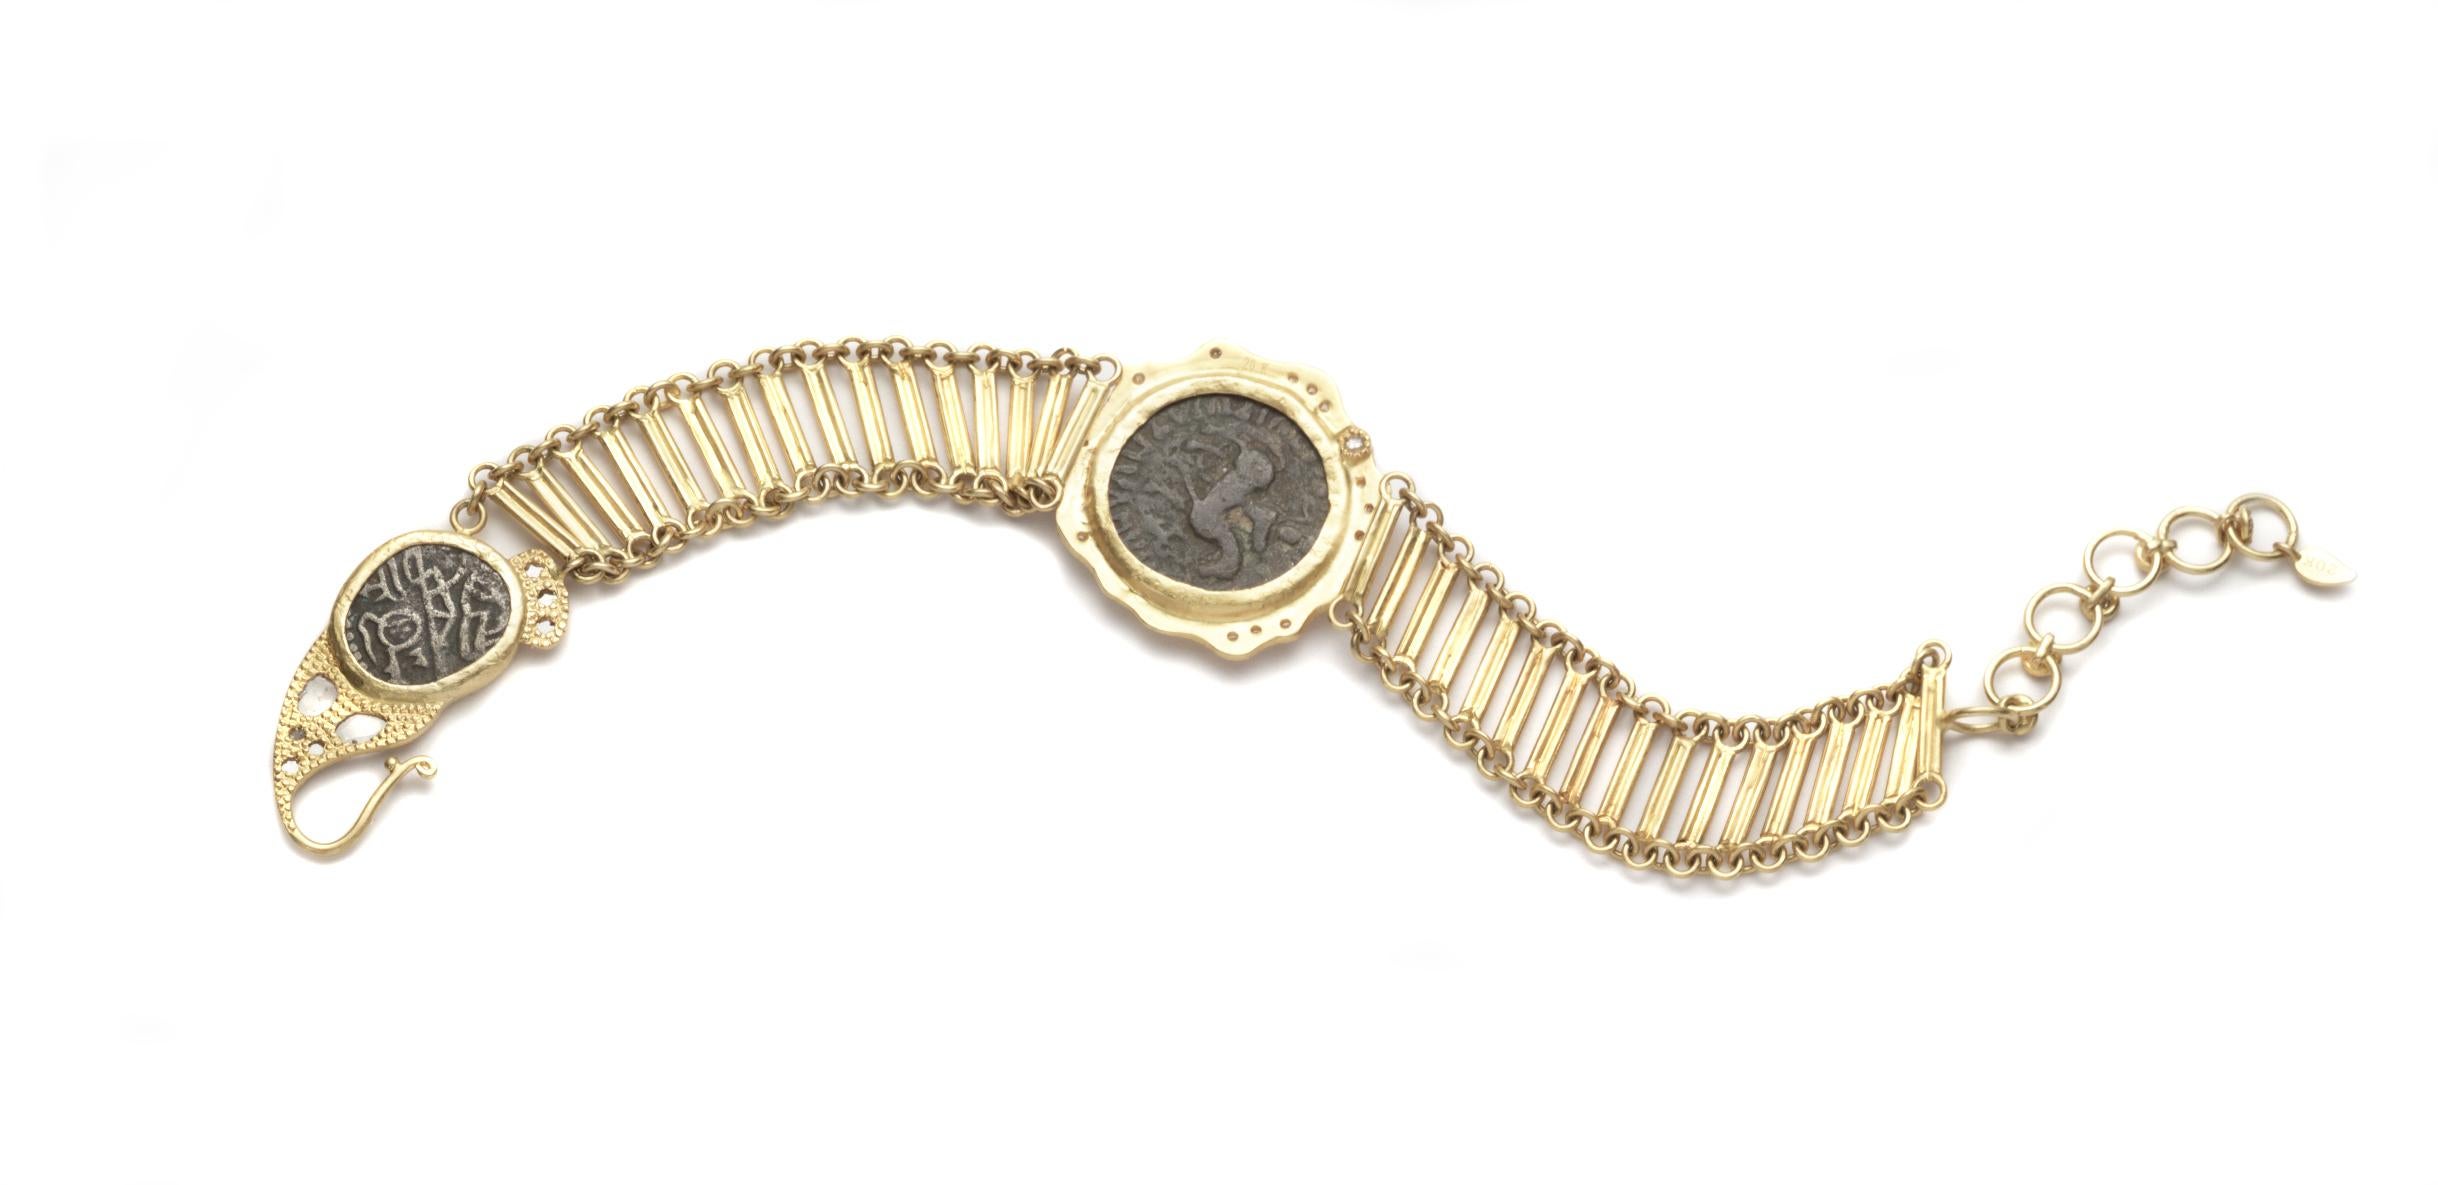 Bracelet Coomi en or jaune 20 carats, fabriqué à la main, avec deux pièces de monnaie anciennes indo-grecques au centre et au fermoir, une bande en forme d'échelle et des diamants brillants et plats de 0,67 ct.

Le bracelet mesure 8 pouces de long